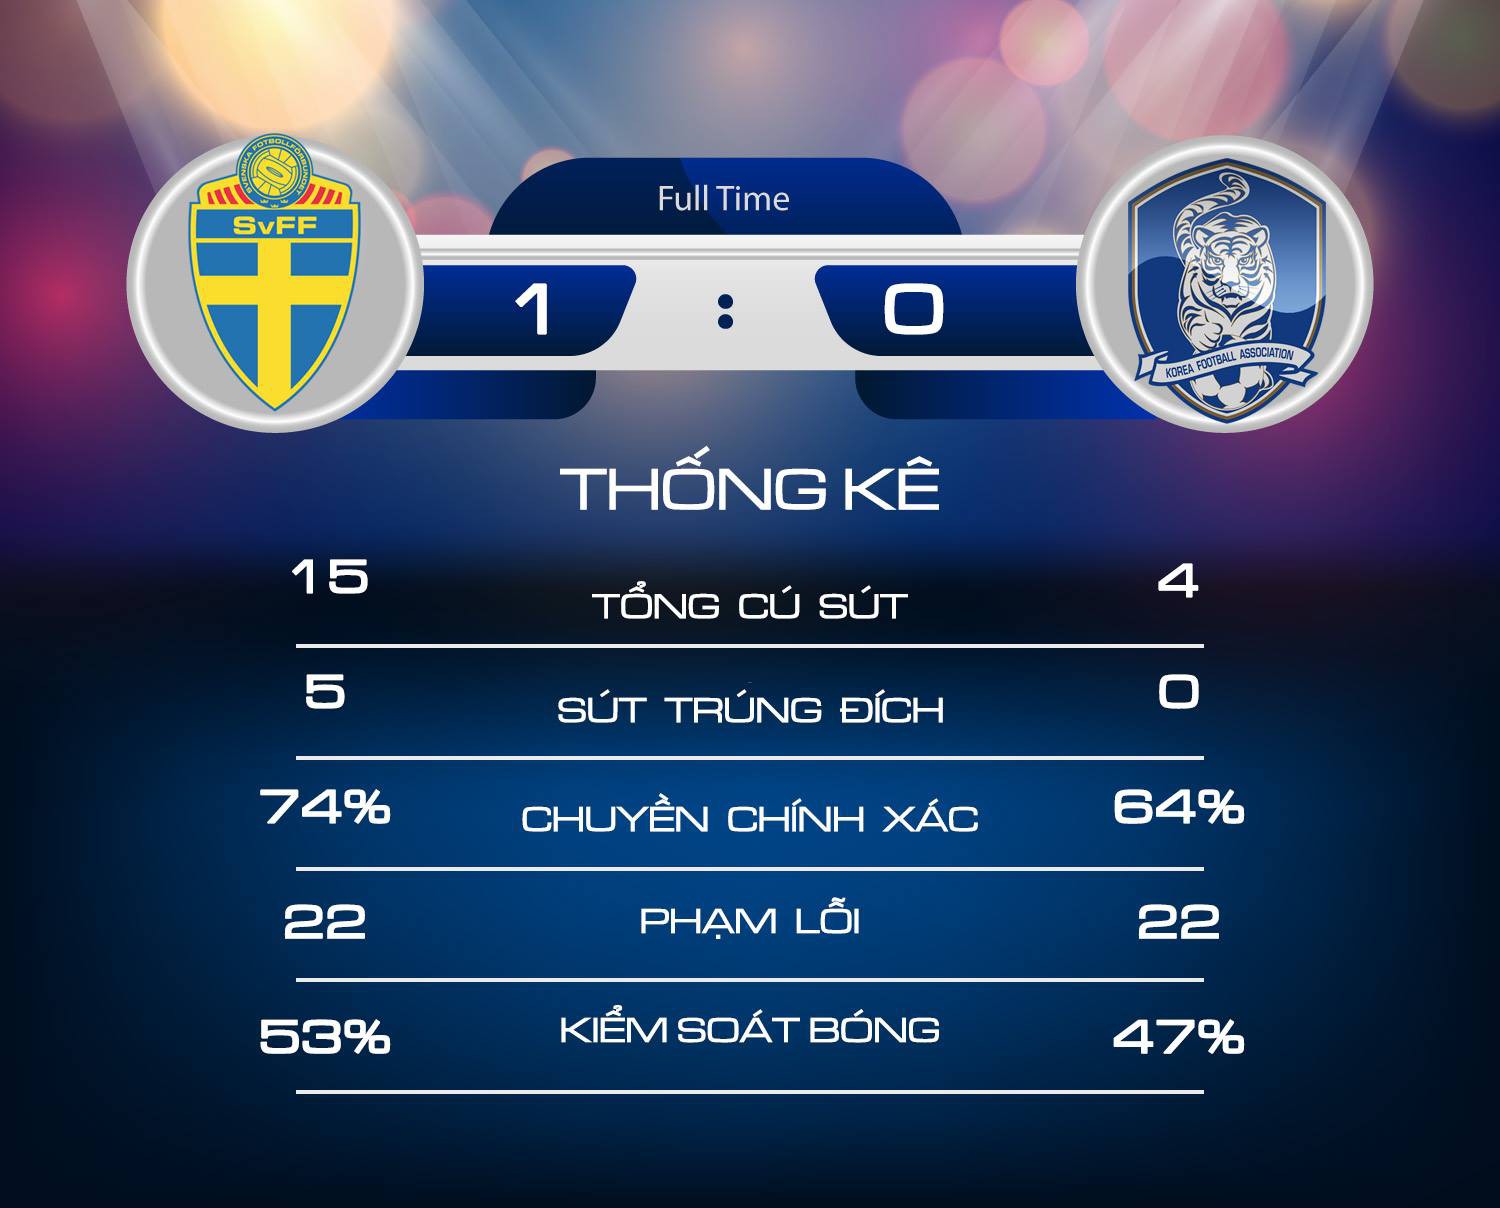 Thụy Điển 1-0 Hàn Quốc: Đại diện châu Á thua đau sau quả penalty từ công nghệ VAR - Ảnh 2.